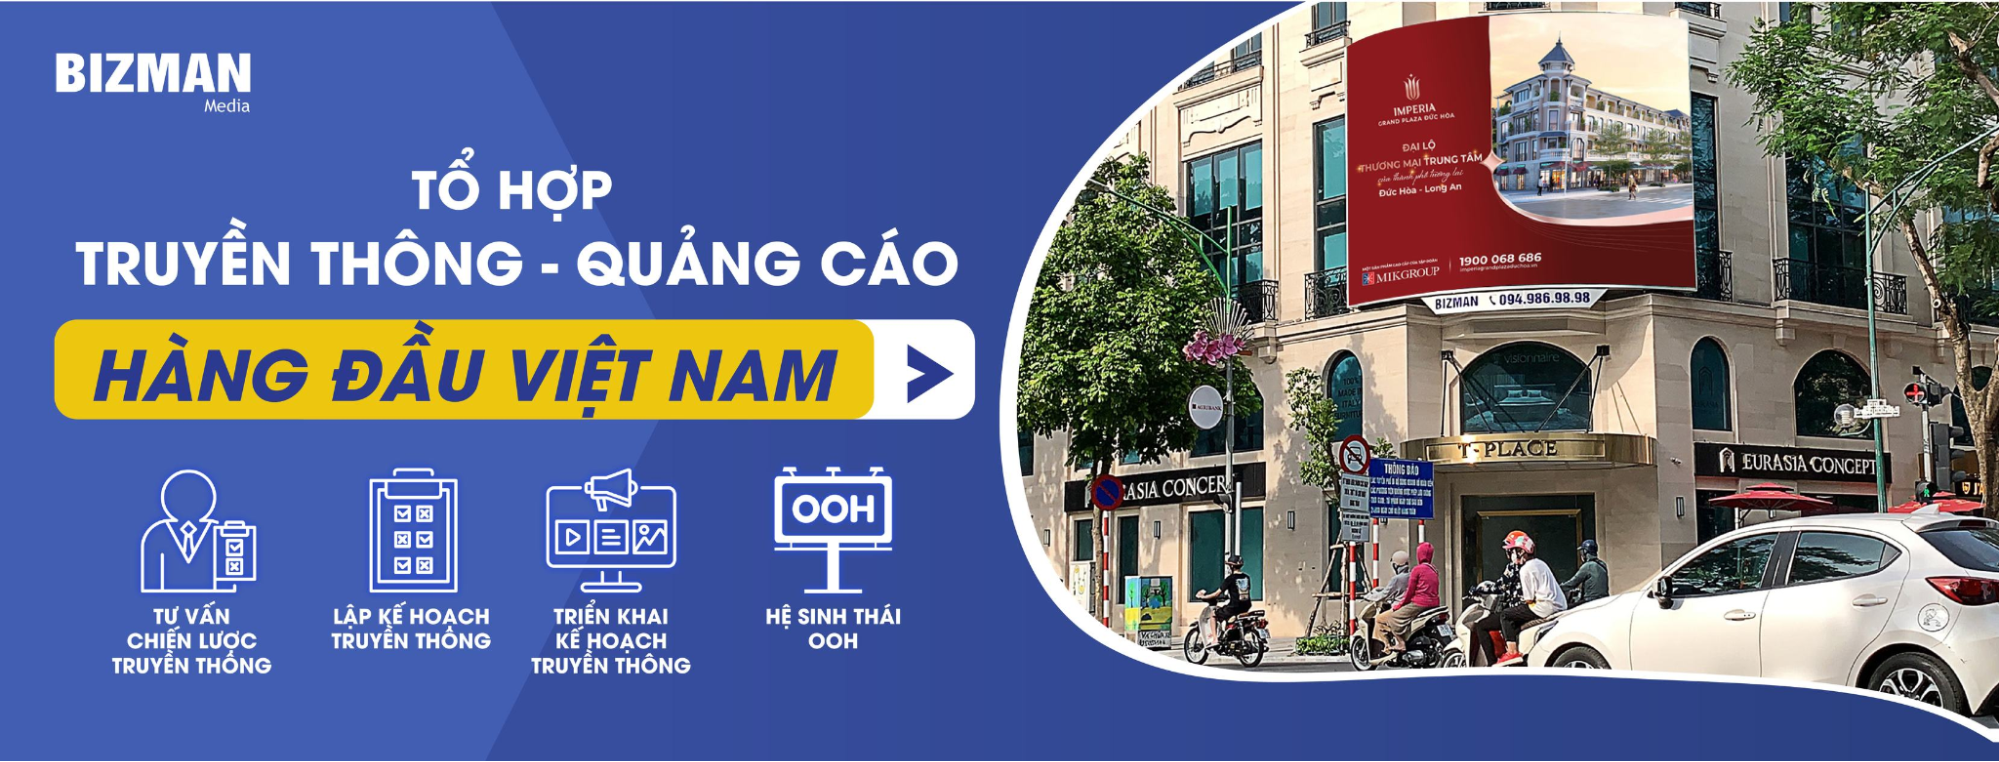 Bizman Media - Tổ hợp truyền thông và quảng cáo uy tín hàng đầu Việt Nam